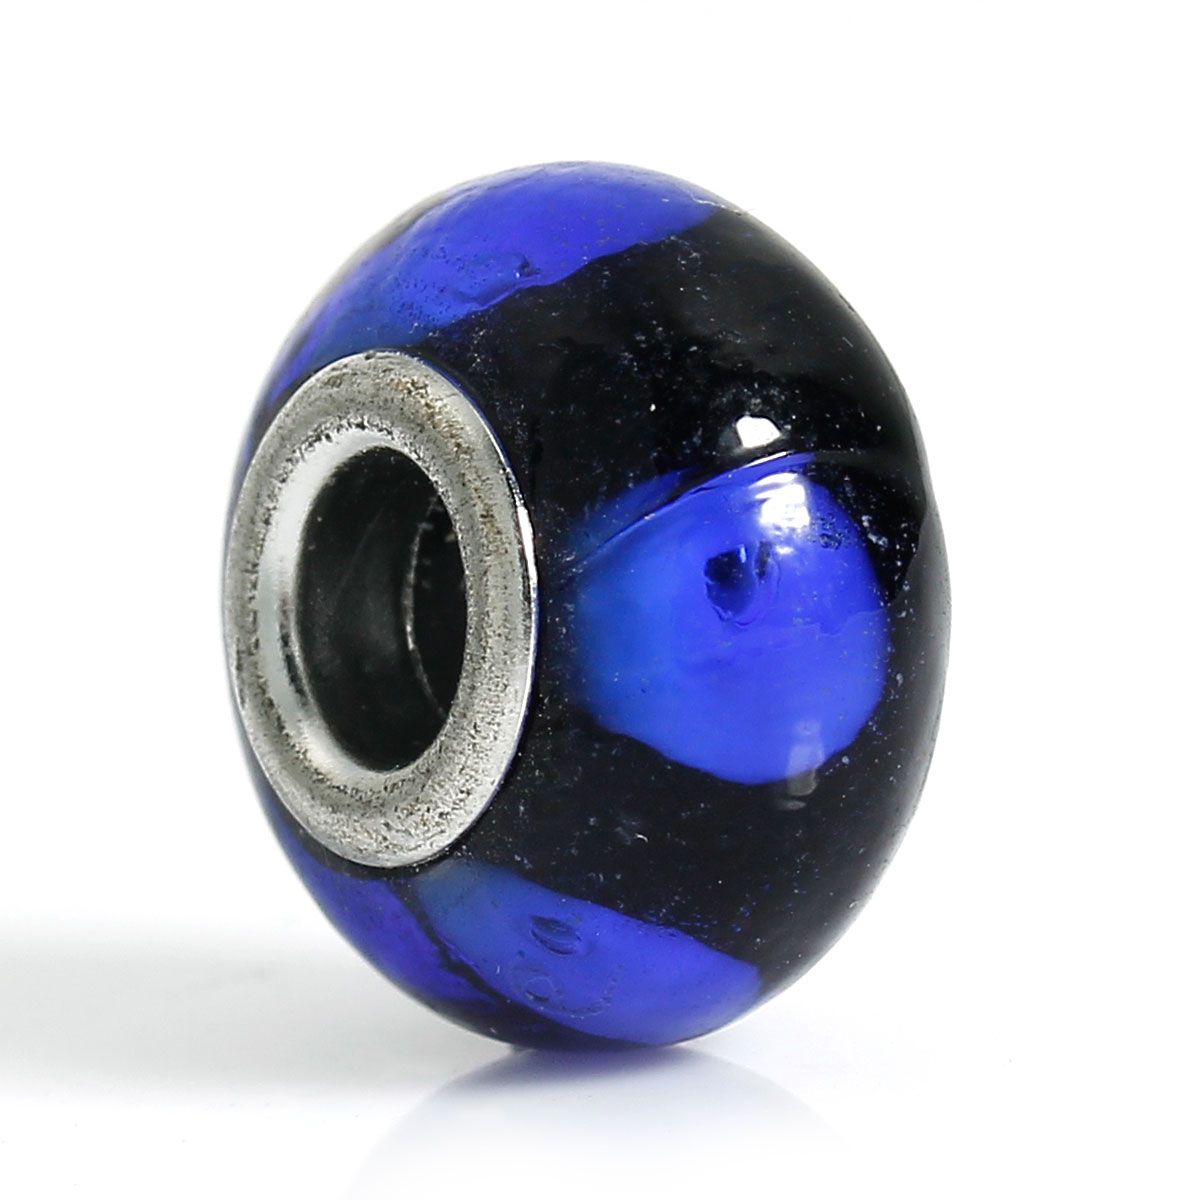 Perle Européenne en verre Ø14x9mm transparent bleu et noir